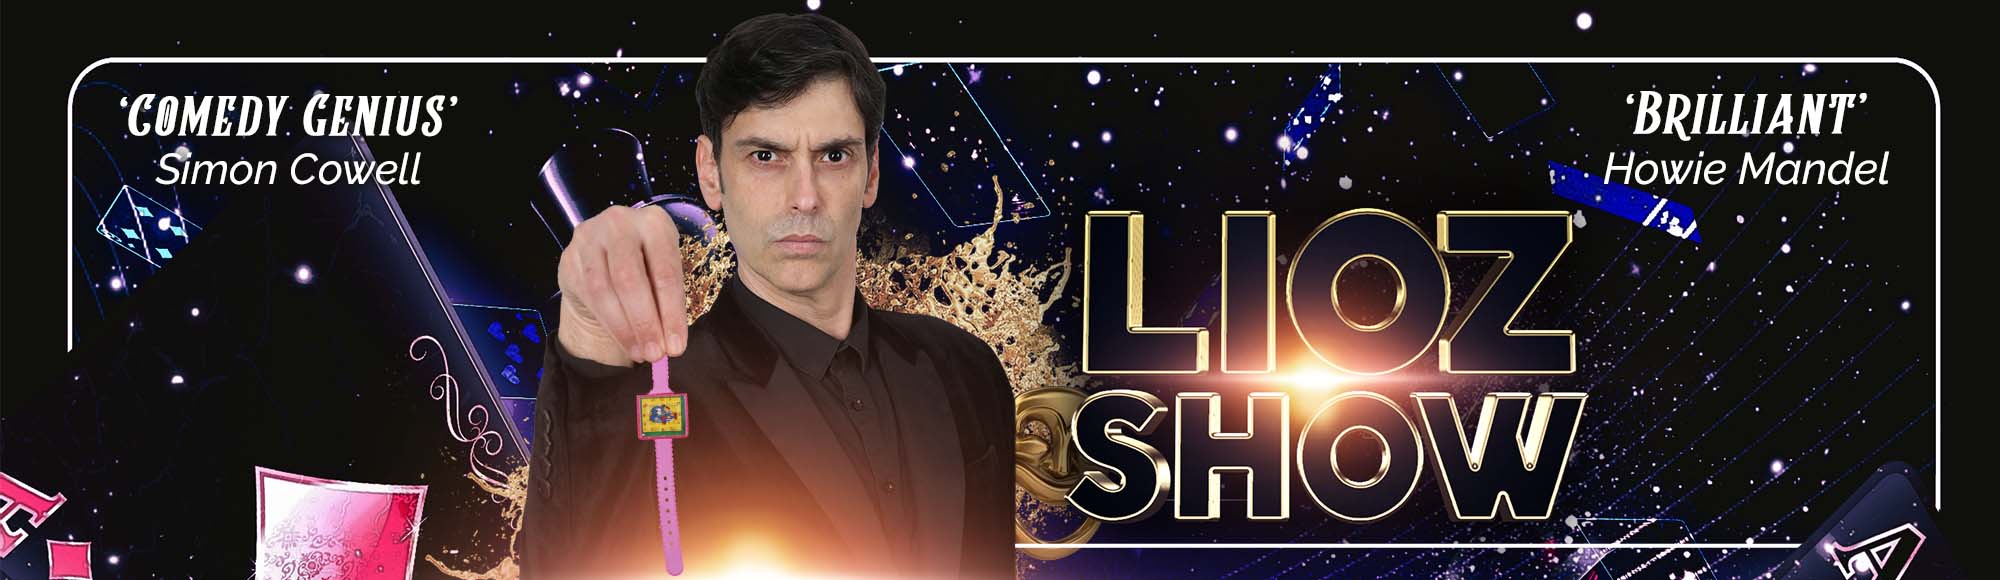 LIOZ Show show